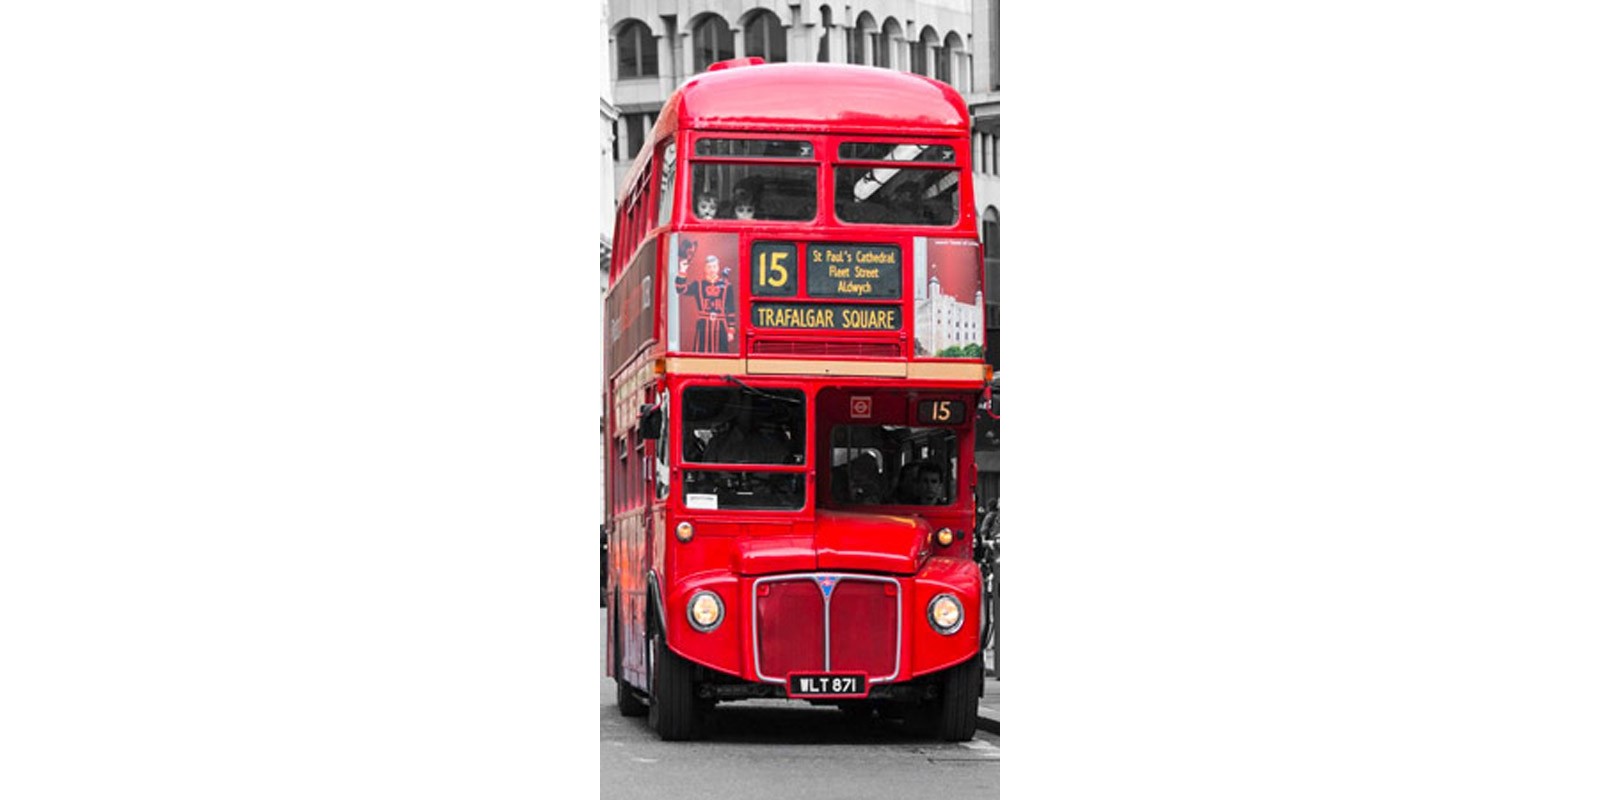 Pangea Images - Double-Decker bus, London